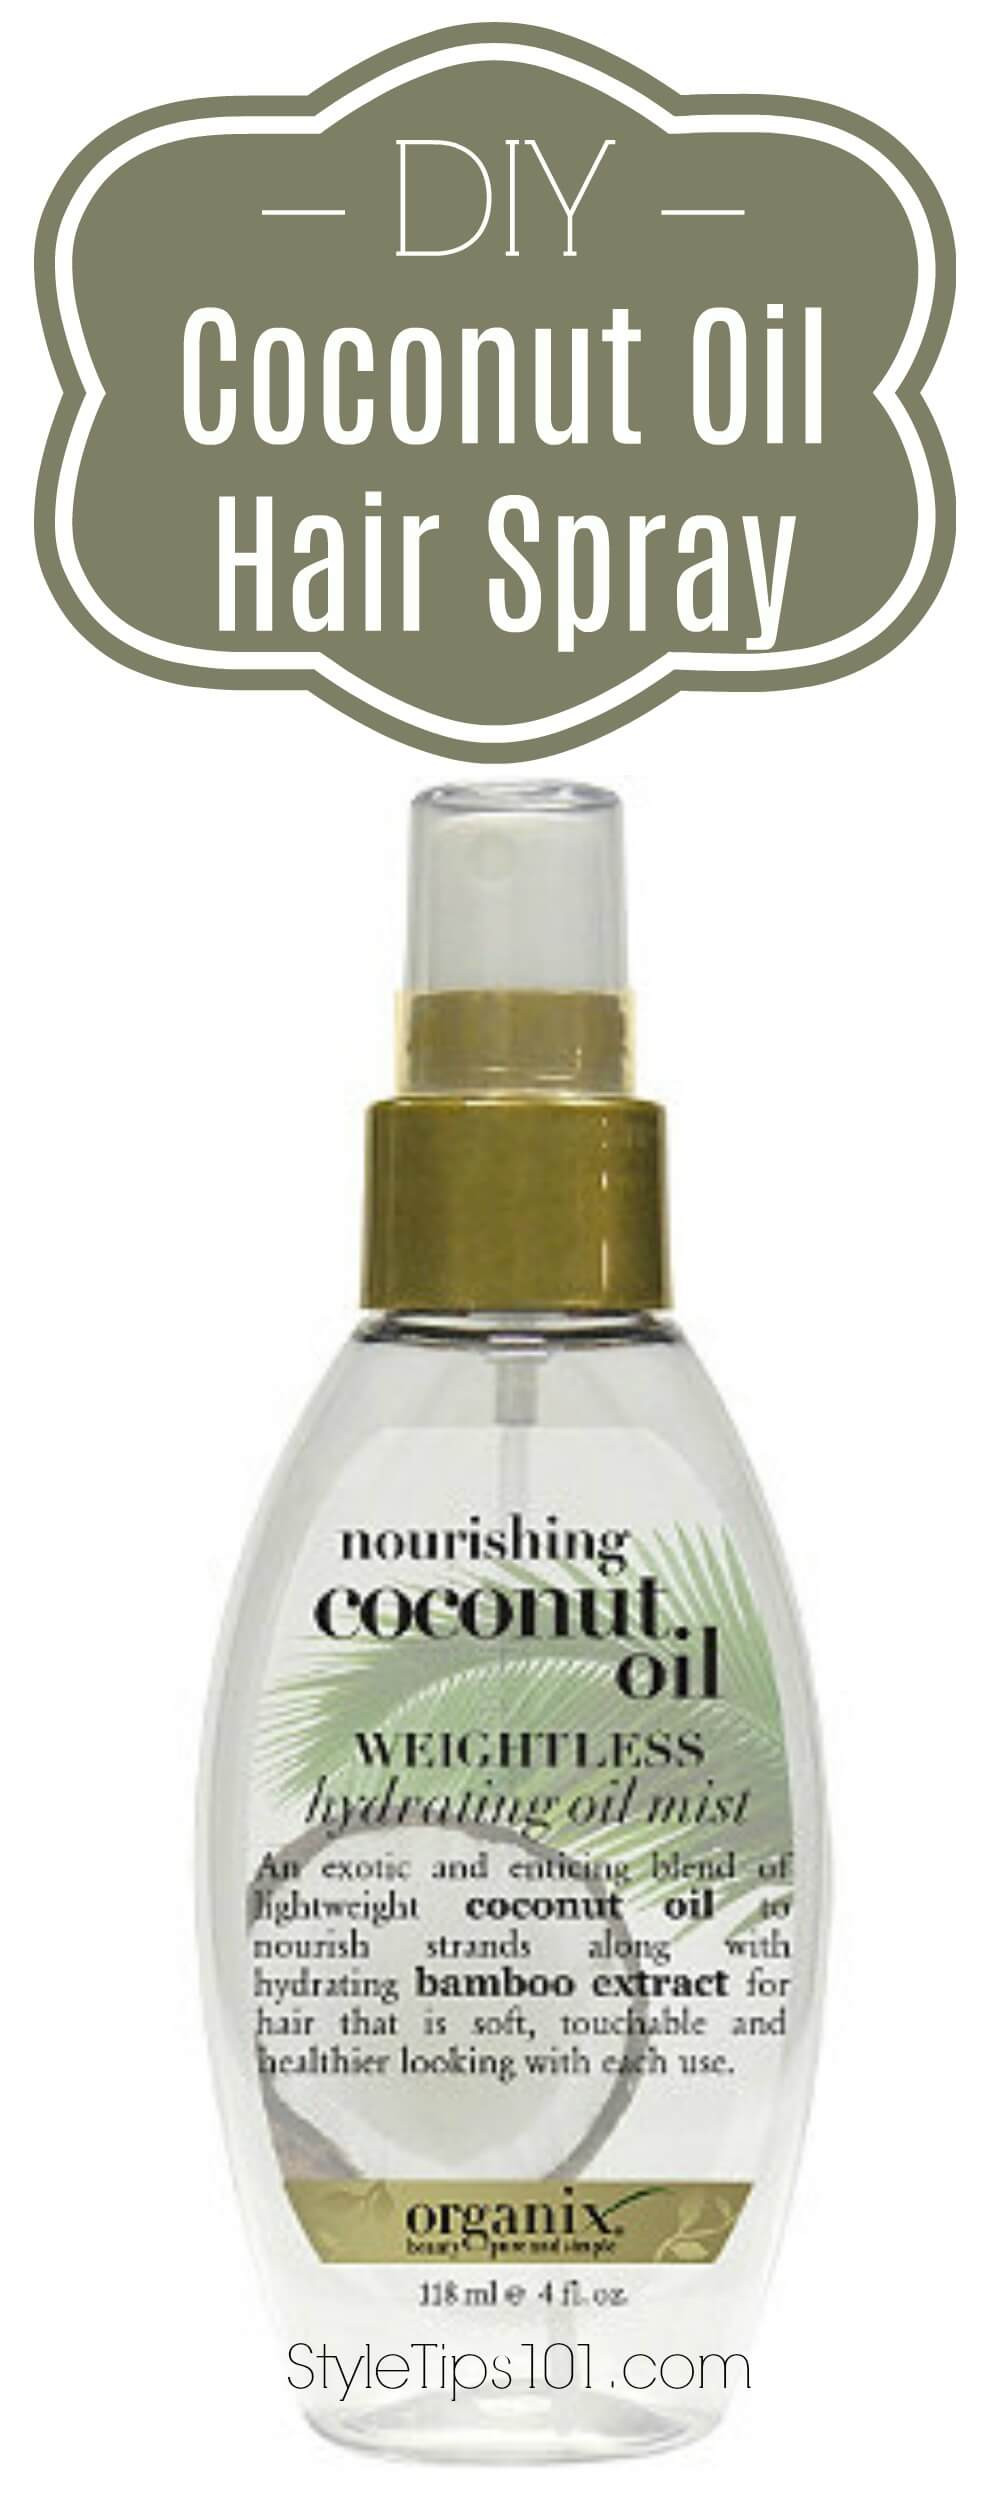 DIY Coconut Oil Hair Spray
 DIY Coconut Oil Hair Spray